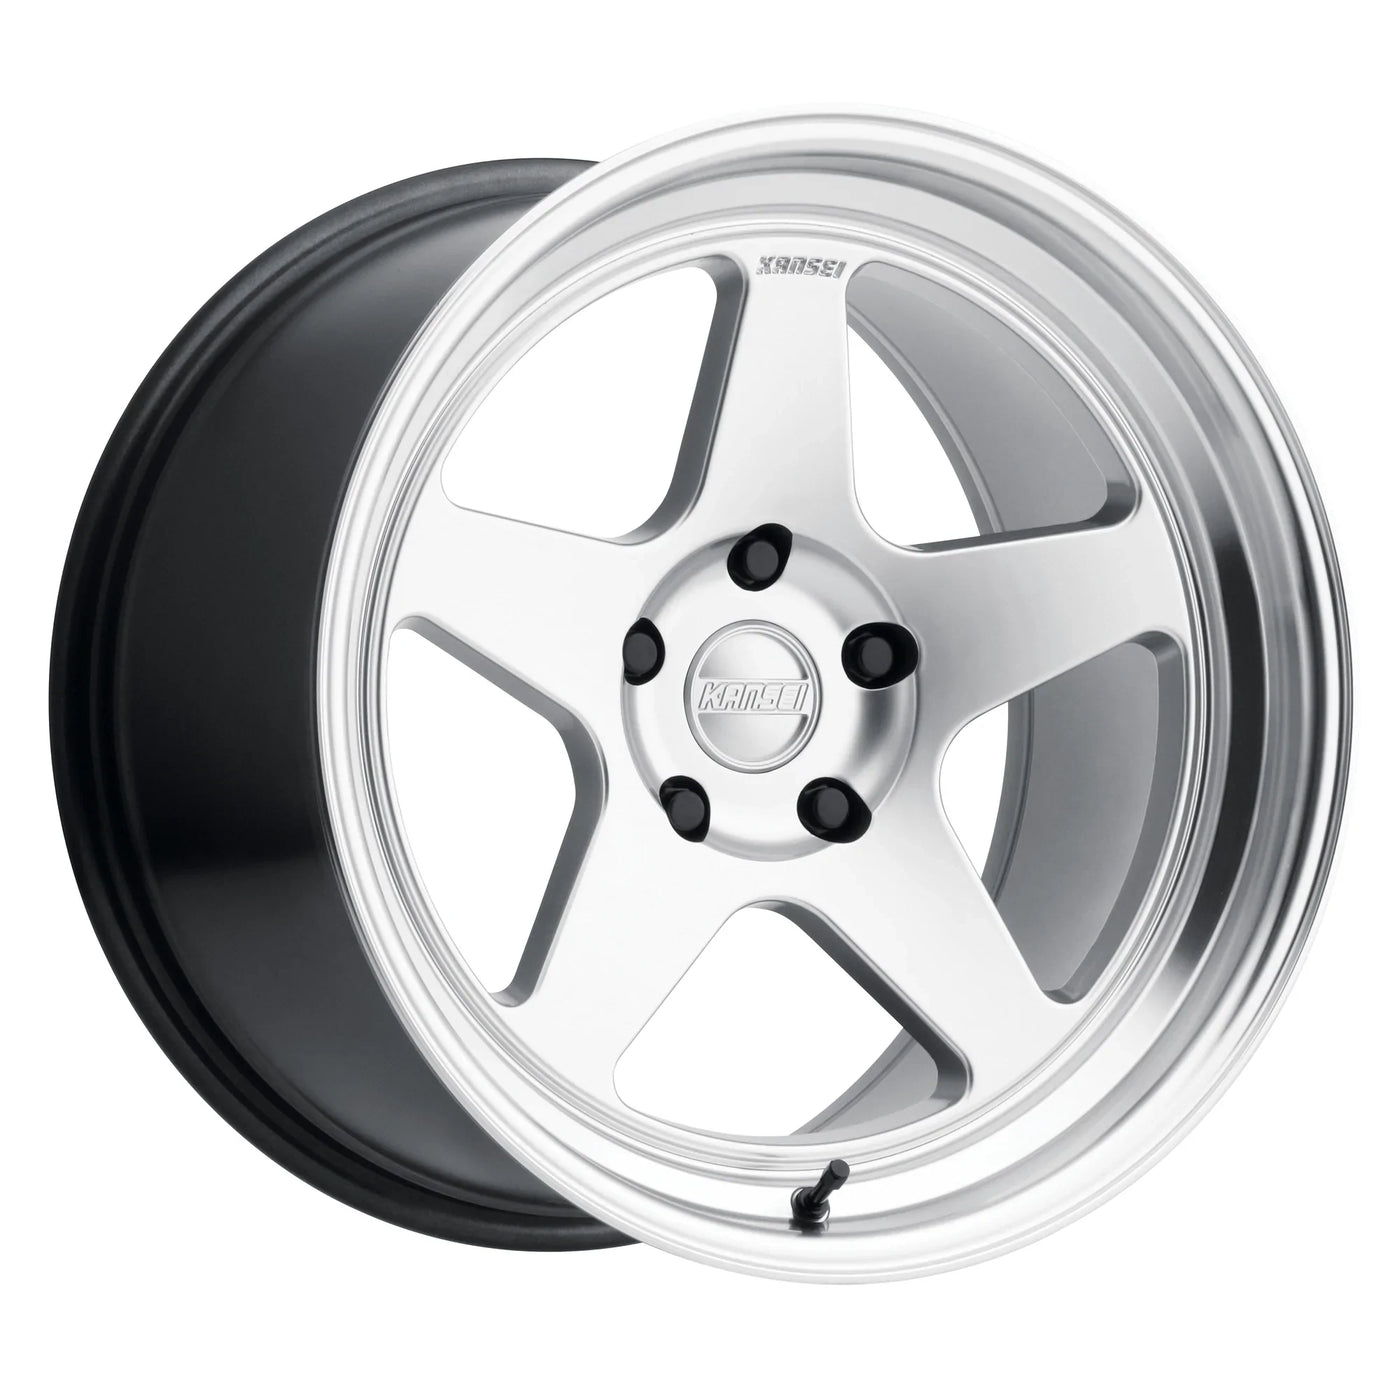 Kansei KNP Wheels 18X9.5 5X114.3 +22 - Silver